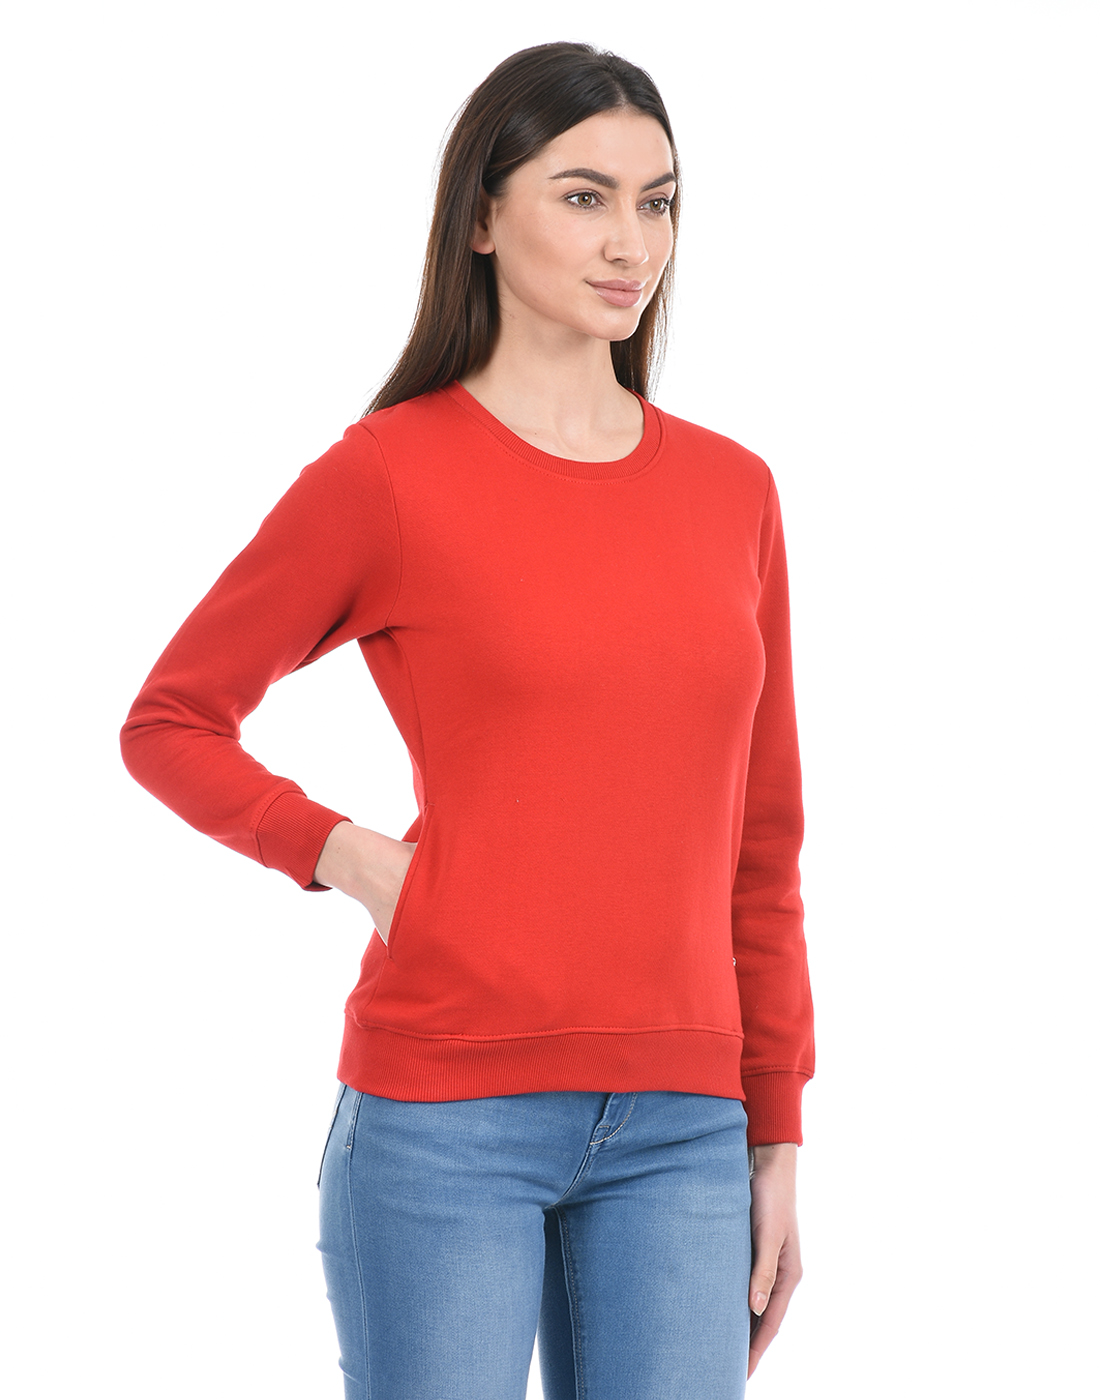 Cloak & Decker by Monte Carlo Women Red Sweat Shirt